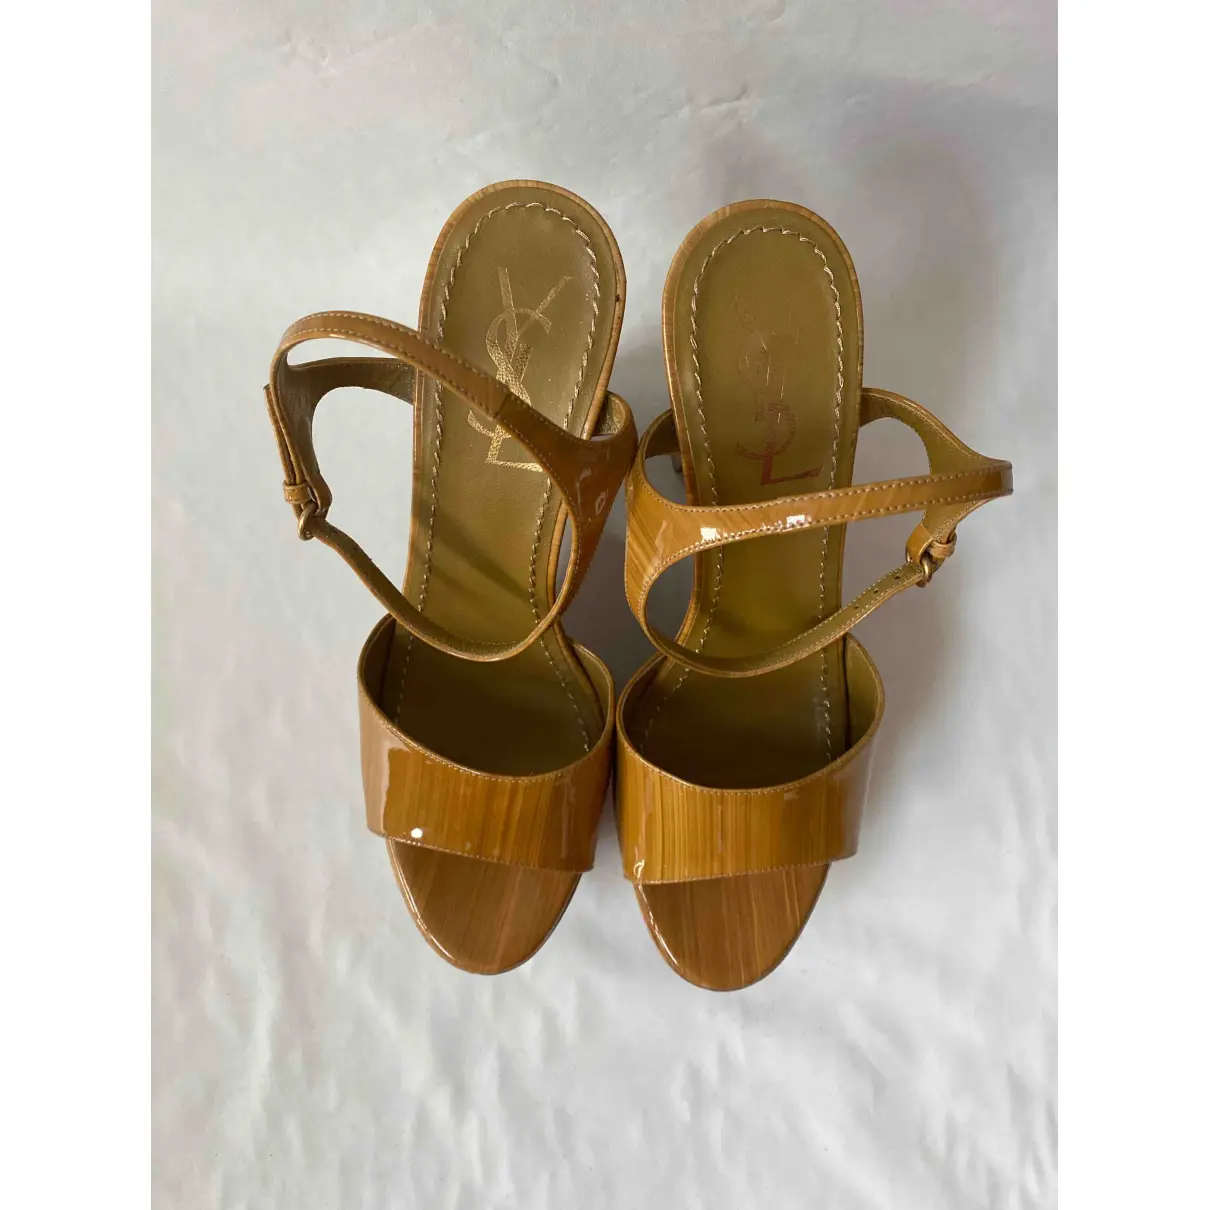 Buy Yves Saint Laurent Patent leather sandals online - Vintage